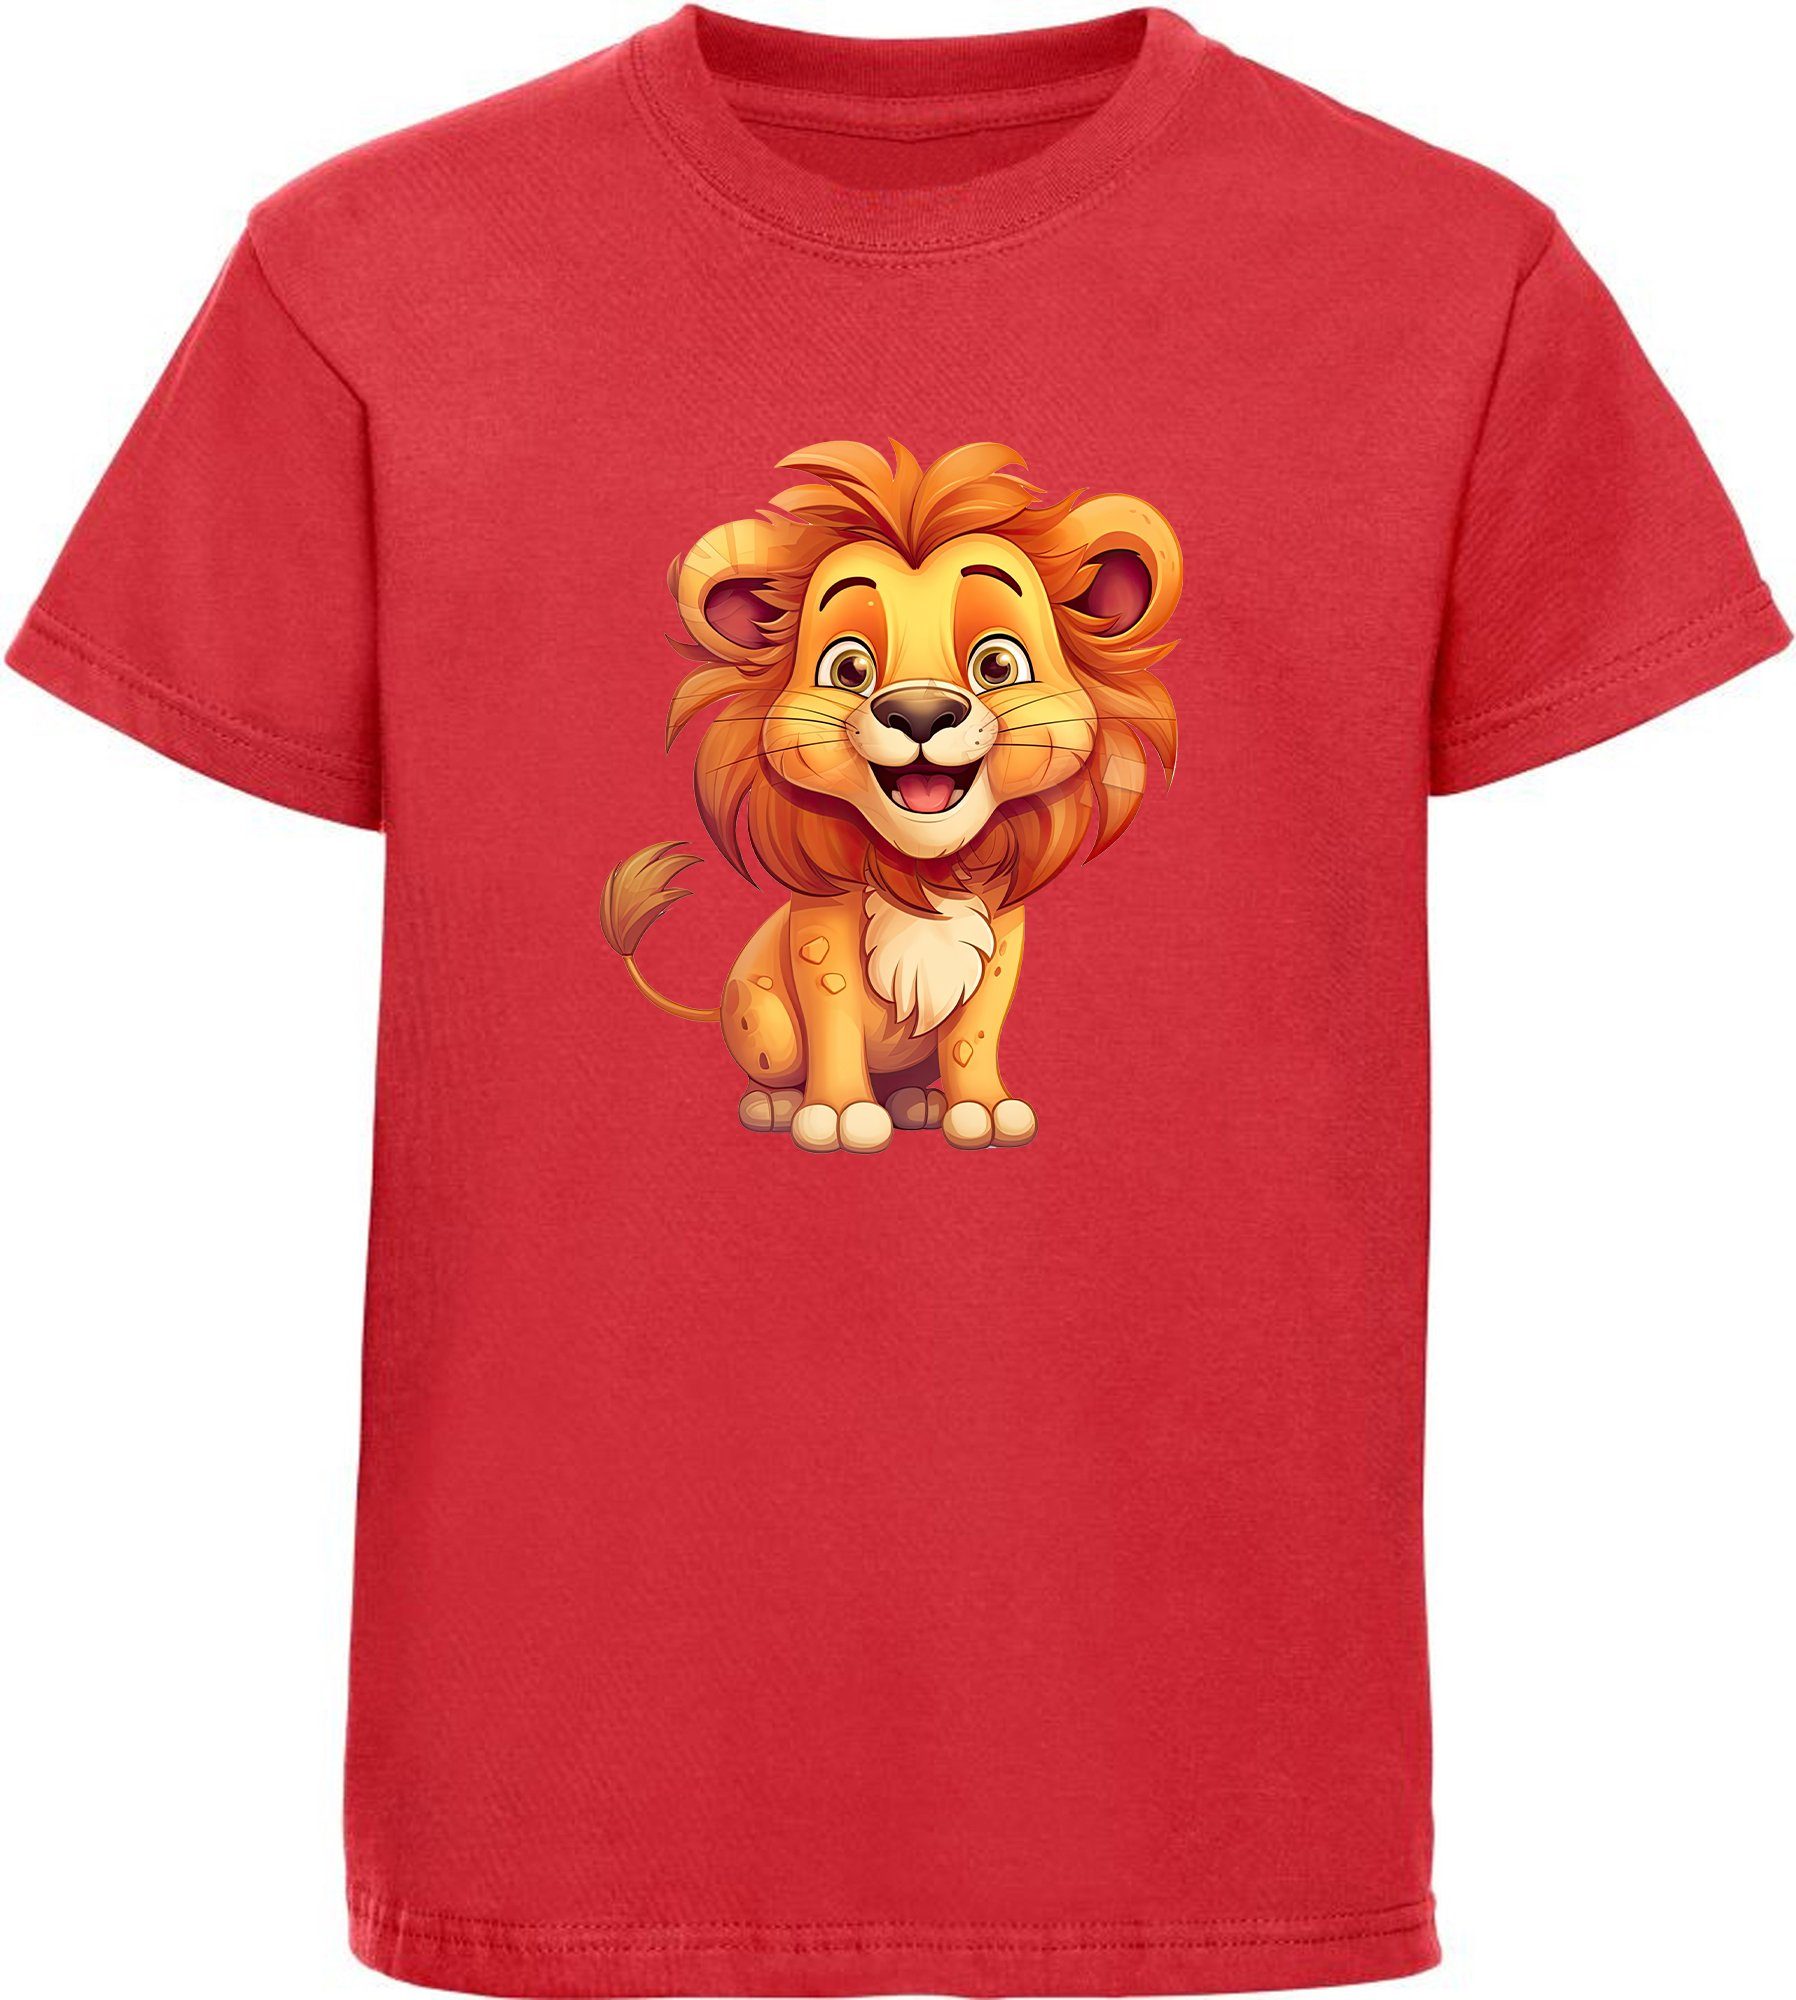 MyDesign24 T-Shirt Kinder Wildtier Print Shirt bedruckt - Baby Löwe Baumwollshirt mit Aufdruck, i275 rot